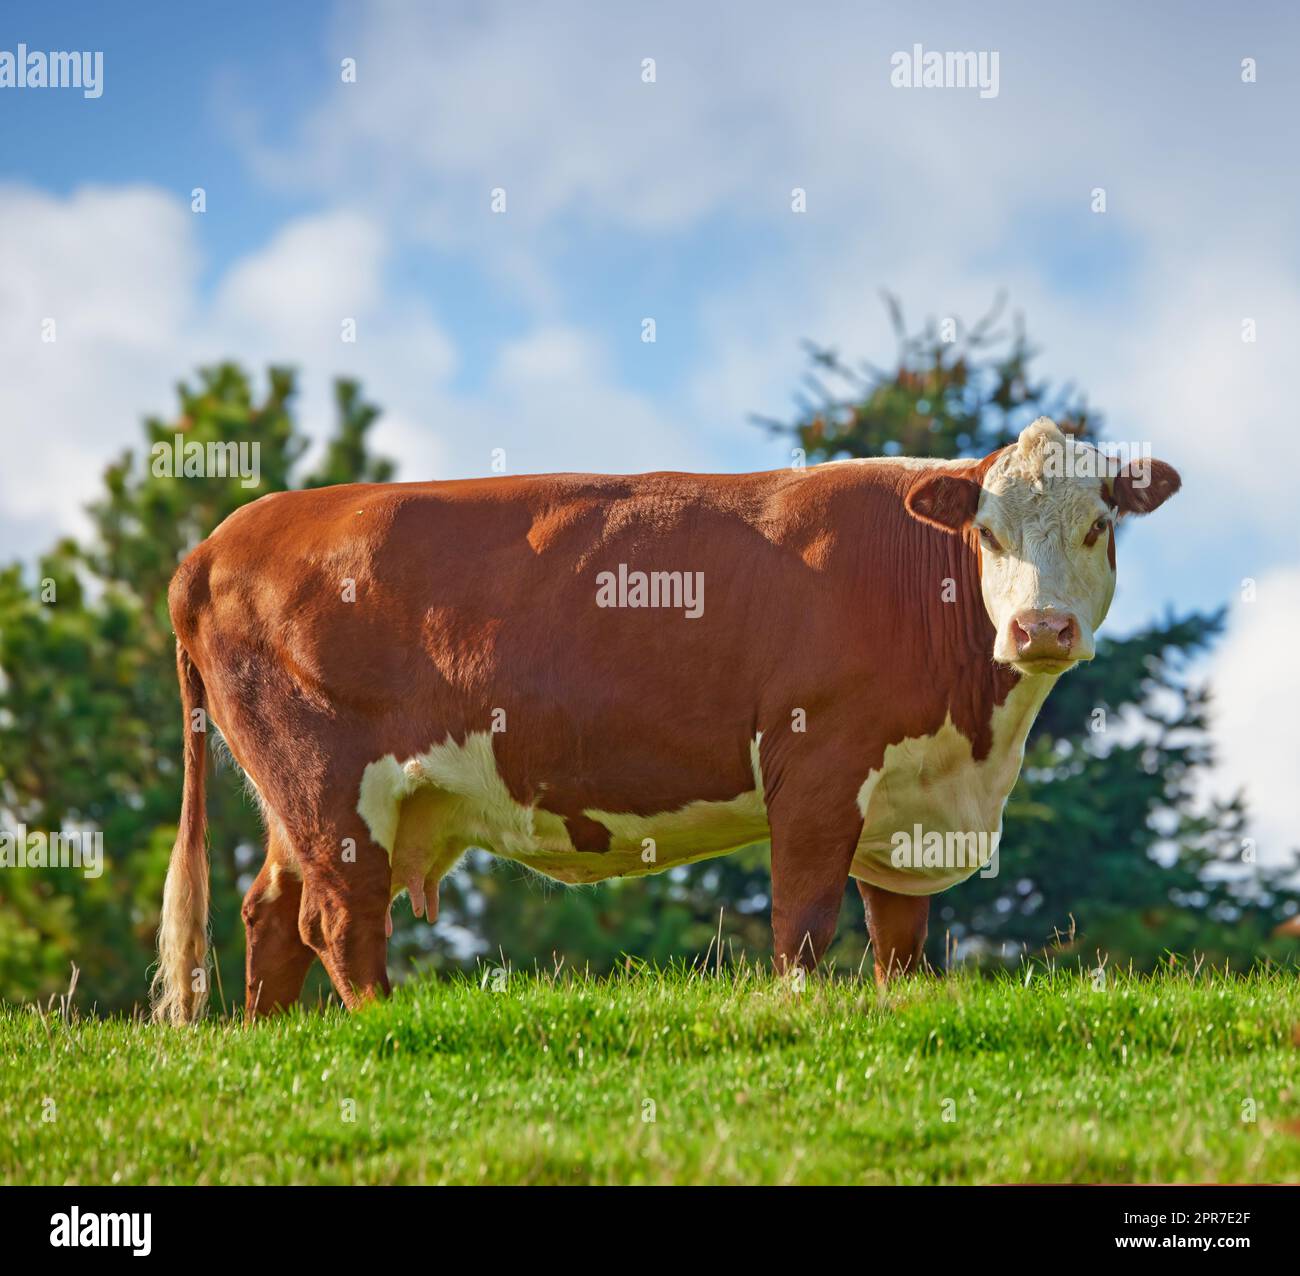 Une grande vache brune paître sur un champ ou une ferme dans la campagne rurale avec un espace de copie bleu ciel. Élevage de taureaux bovins dans une ferme de bétail biologique et durable pour l'industrie bovine et laitière Banque D'Images